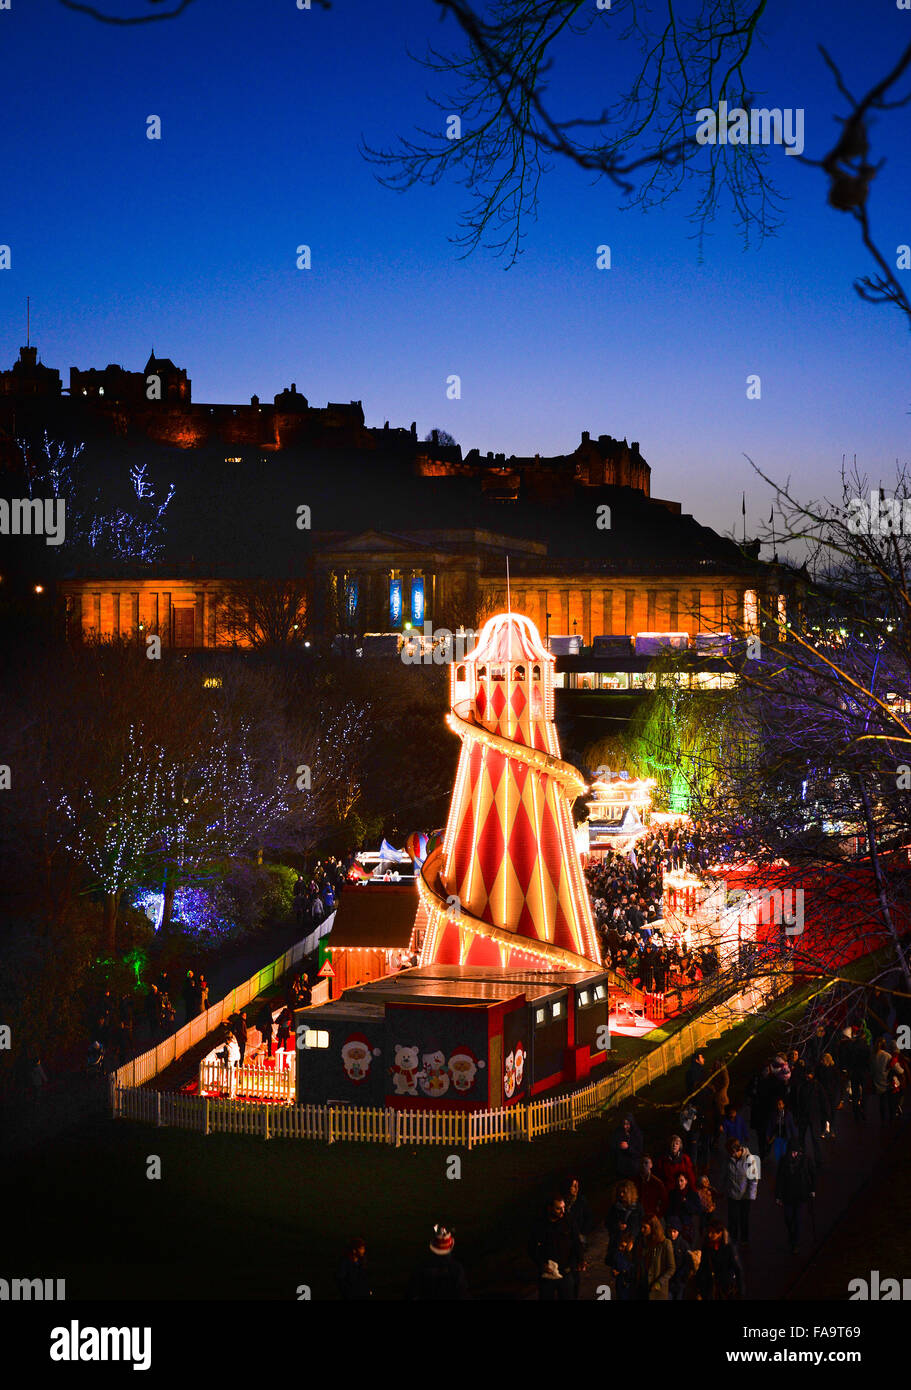 Edimburgo, el famoso Mercado de Navidad europeo en Princess Street Gardens con el castillo detrás Foto de stock